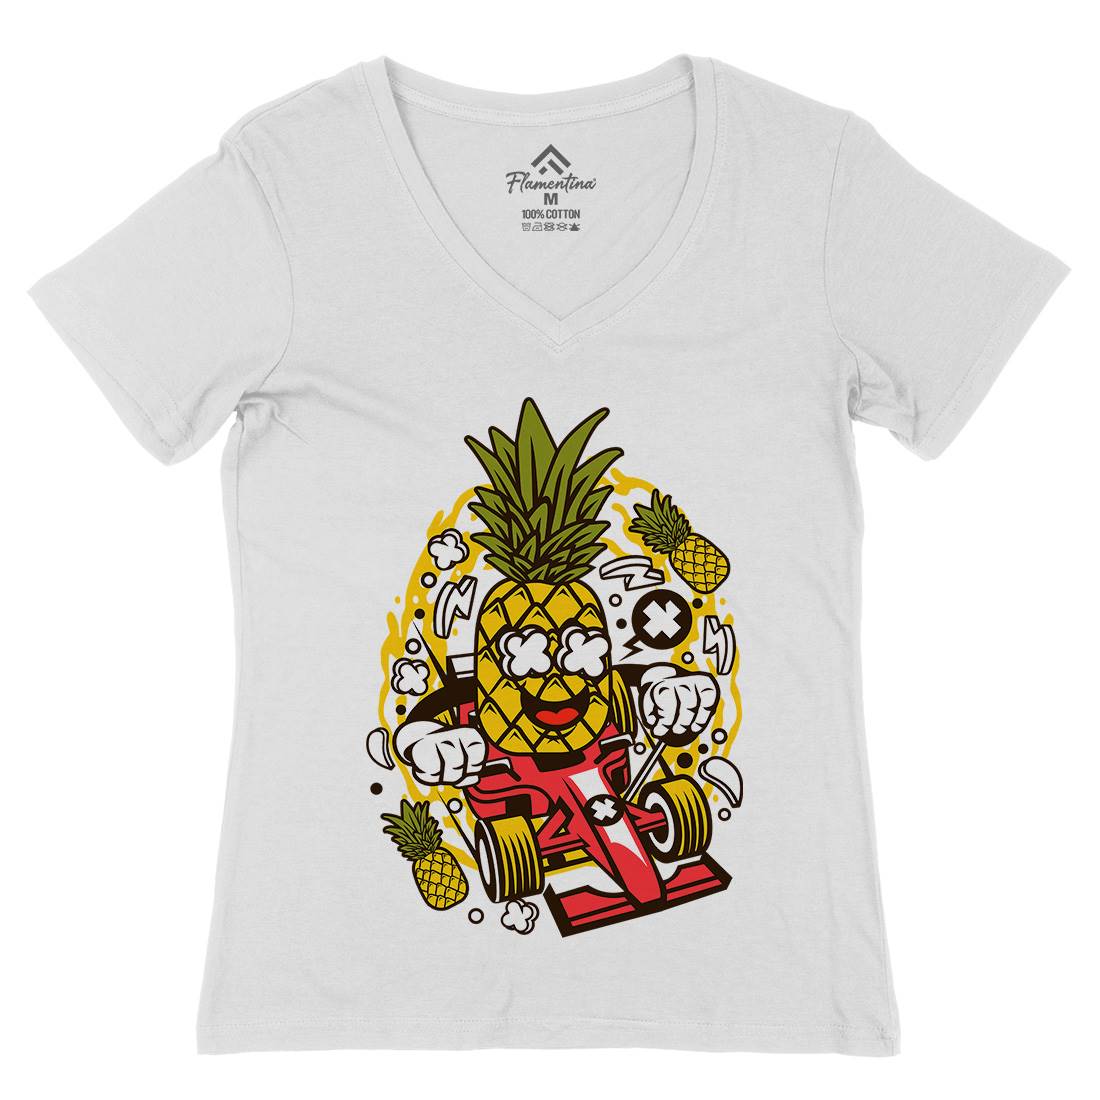 Pineapple Formula Racer Womens Organic V-Neck T-Shirt Sport C606